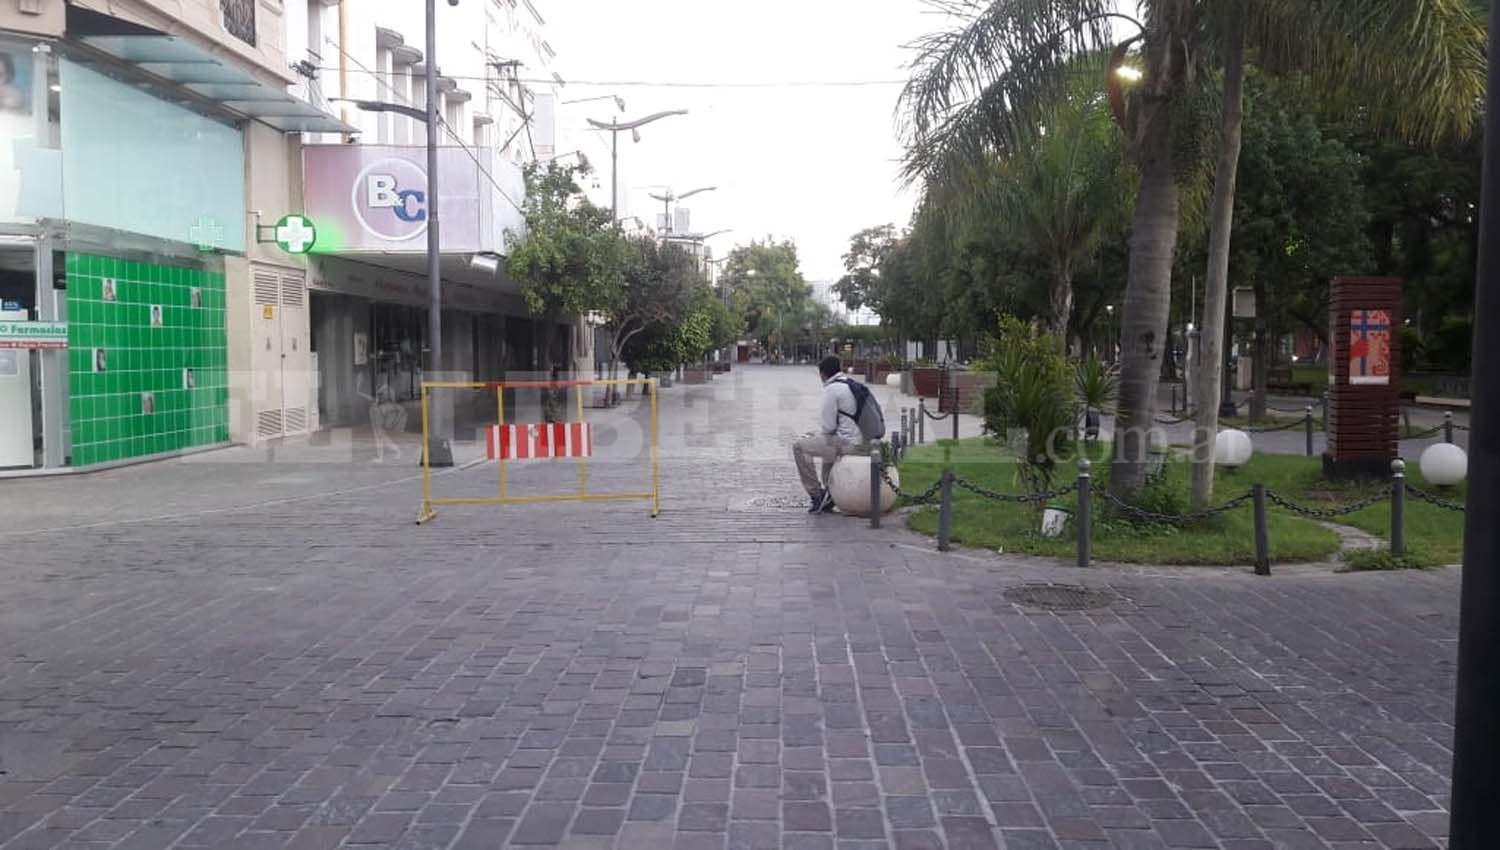 Las calles santiagueñas se mostraron casi vacías en este primer día de aislamiento